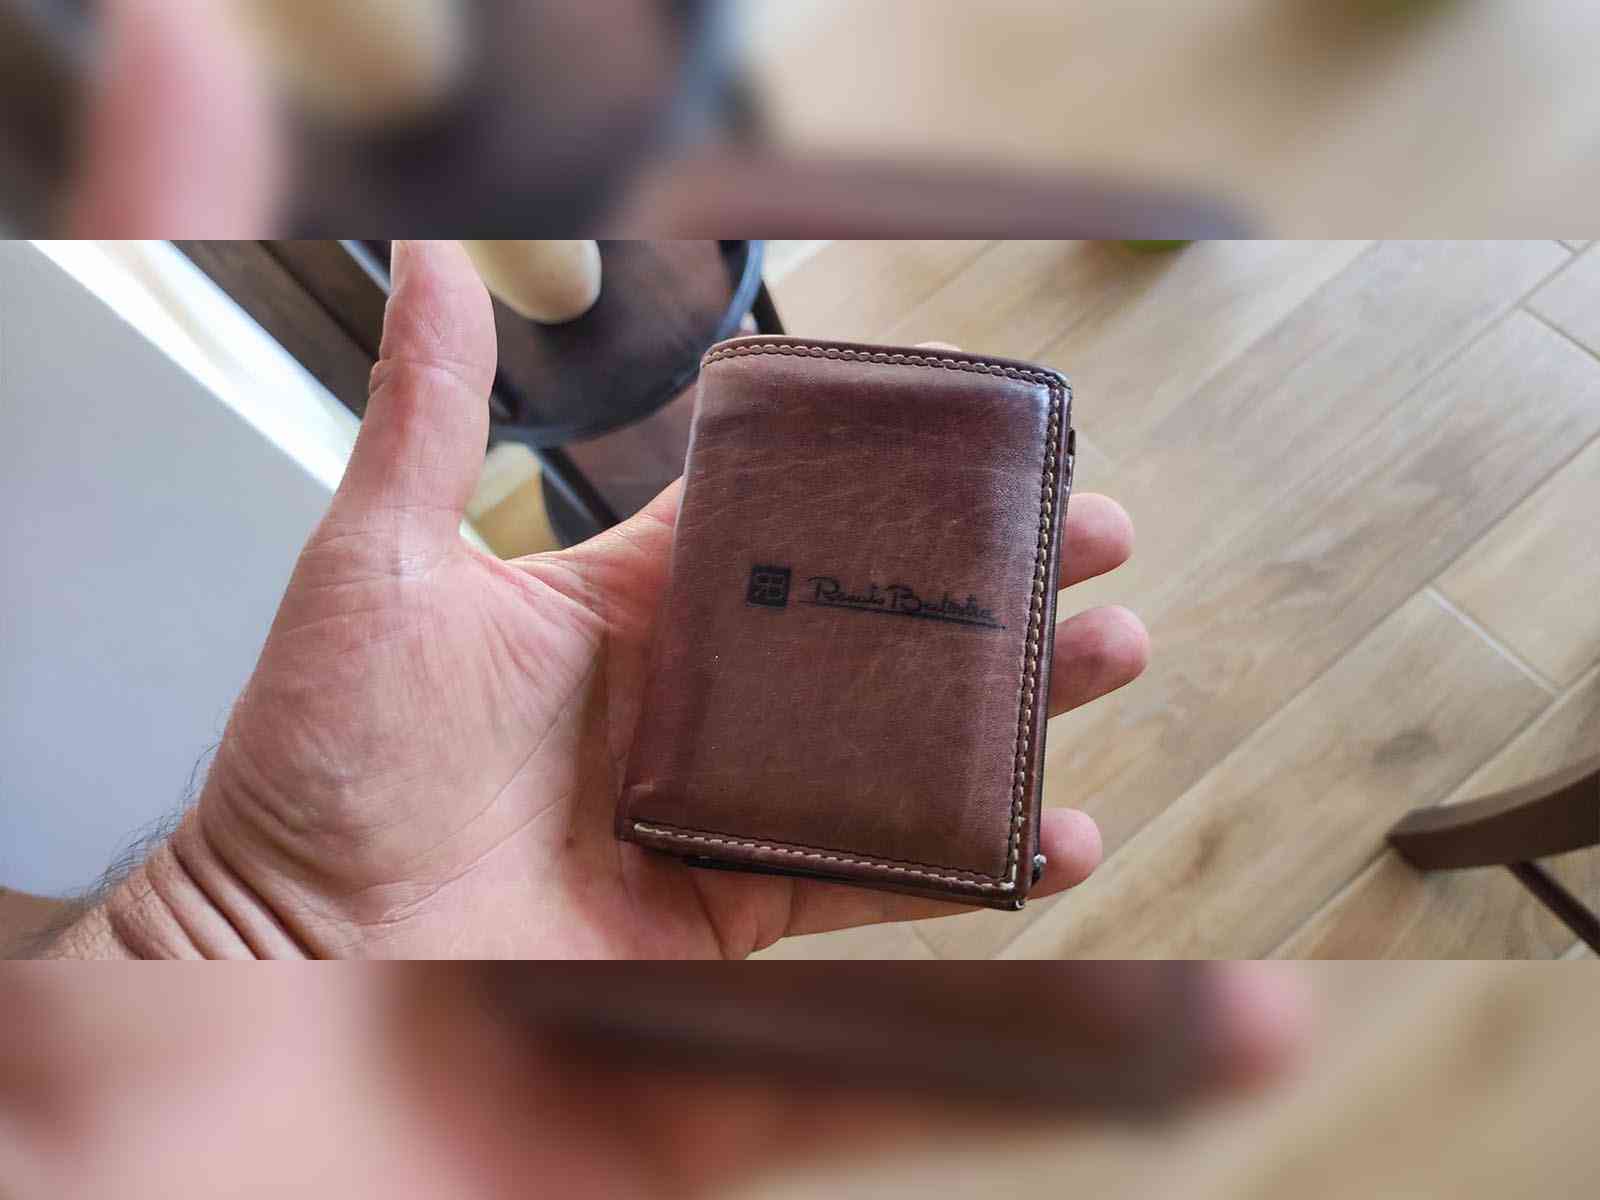 Immagine articolo: Menfi. Perde il portafoglio, sconosciuto lo restituisce: "Spero di poterti ringraziare con un abbraccio"